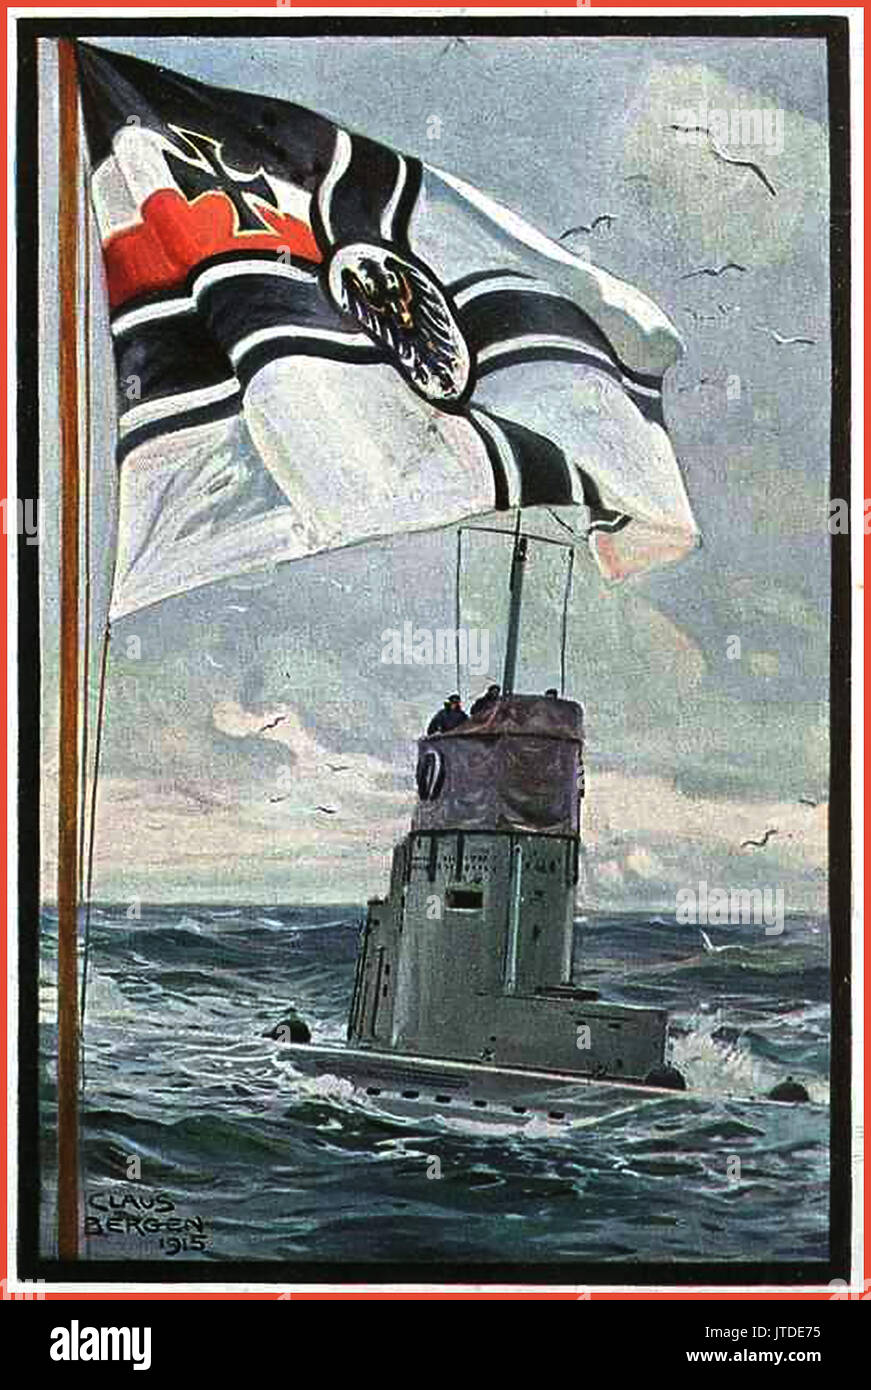 Propaganda Kriegsmarine Malerei 1915 WW1 deutscher U-Boot auf der Oberfläche mit der Deutschen Marine Flagge im Vordergrund des Künstlers Claus Bergen Stockfoto